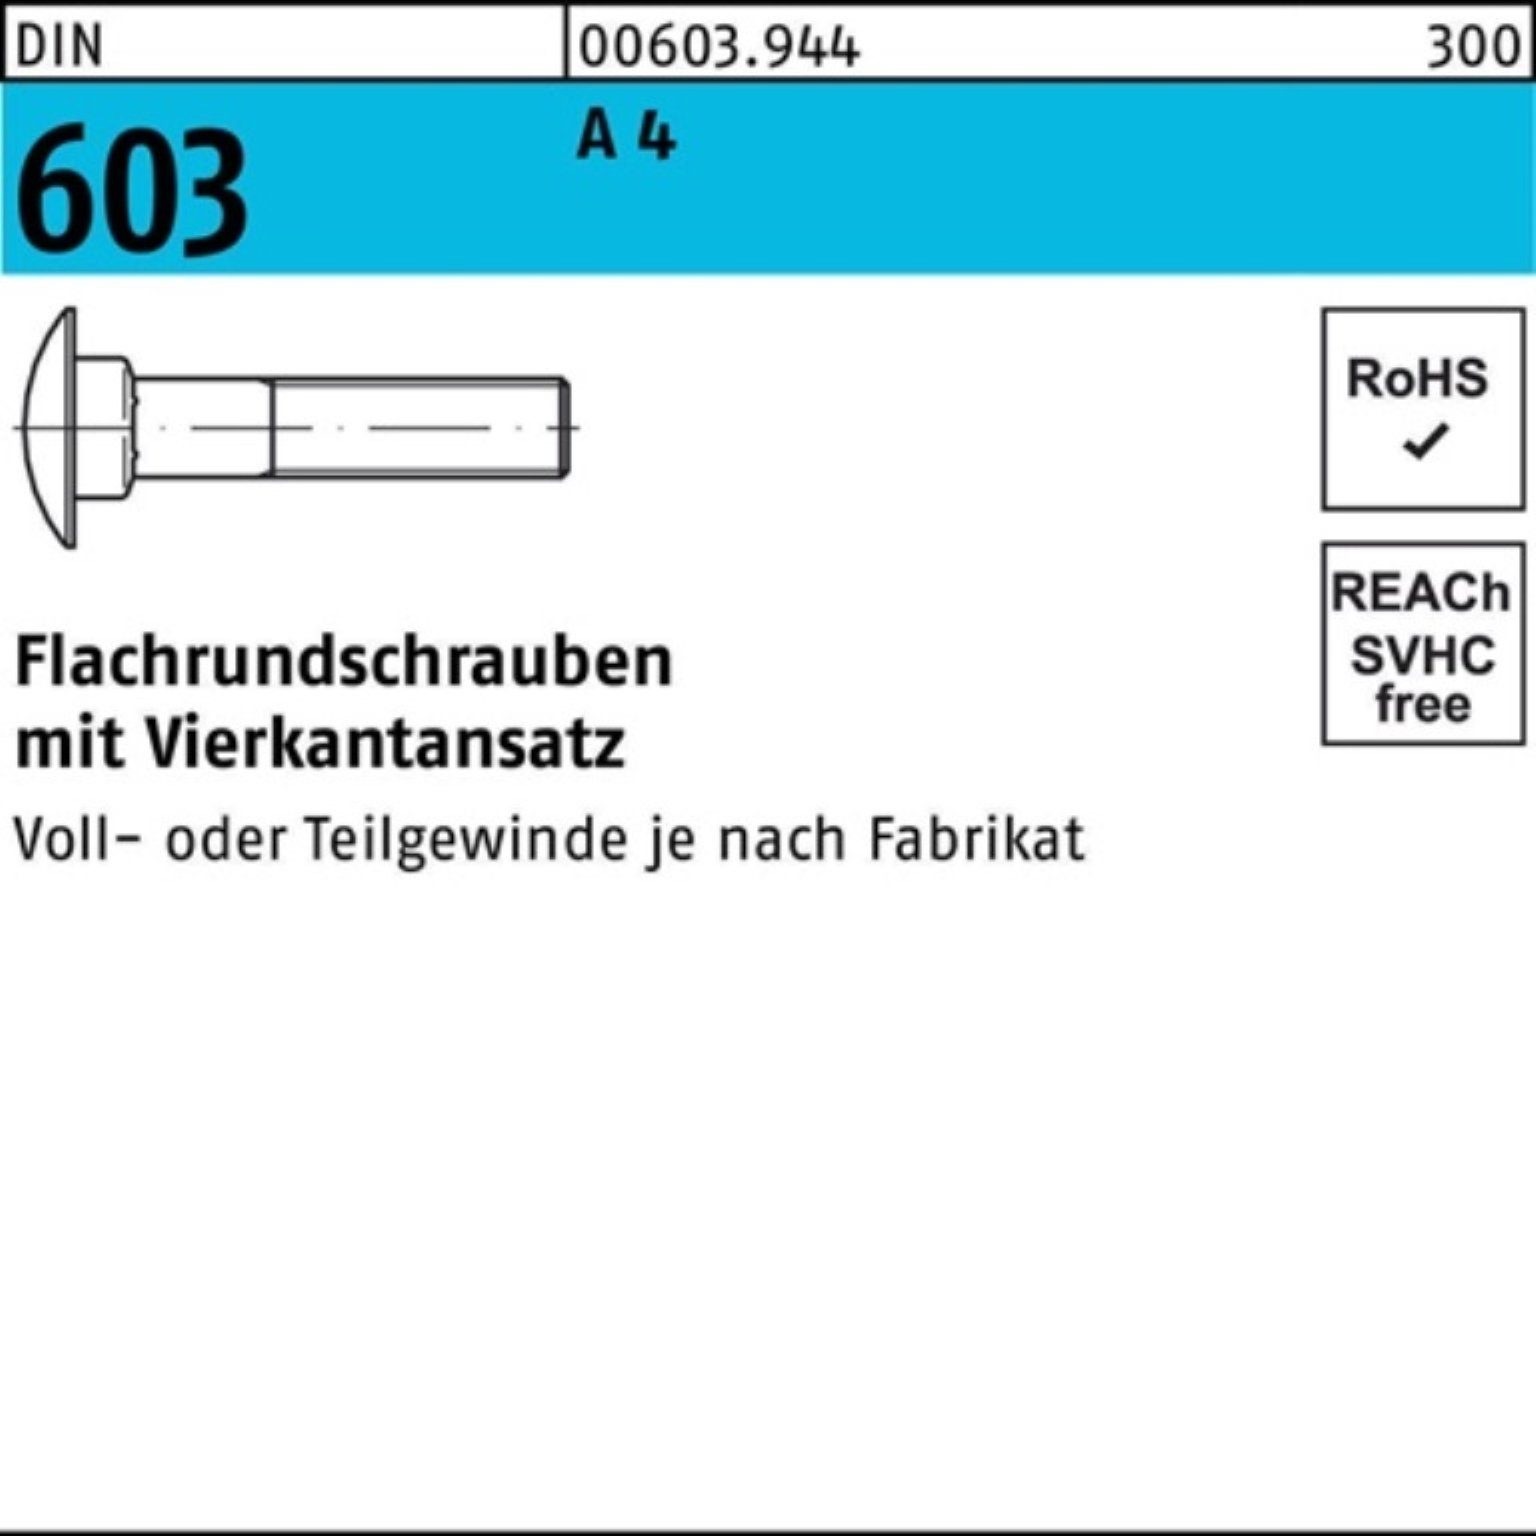 Reyher Schraube 100er Pack Flachrundschraube M12x A Stü 80 Vierkantansatz 603 4 1 DIN